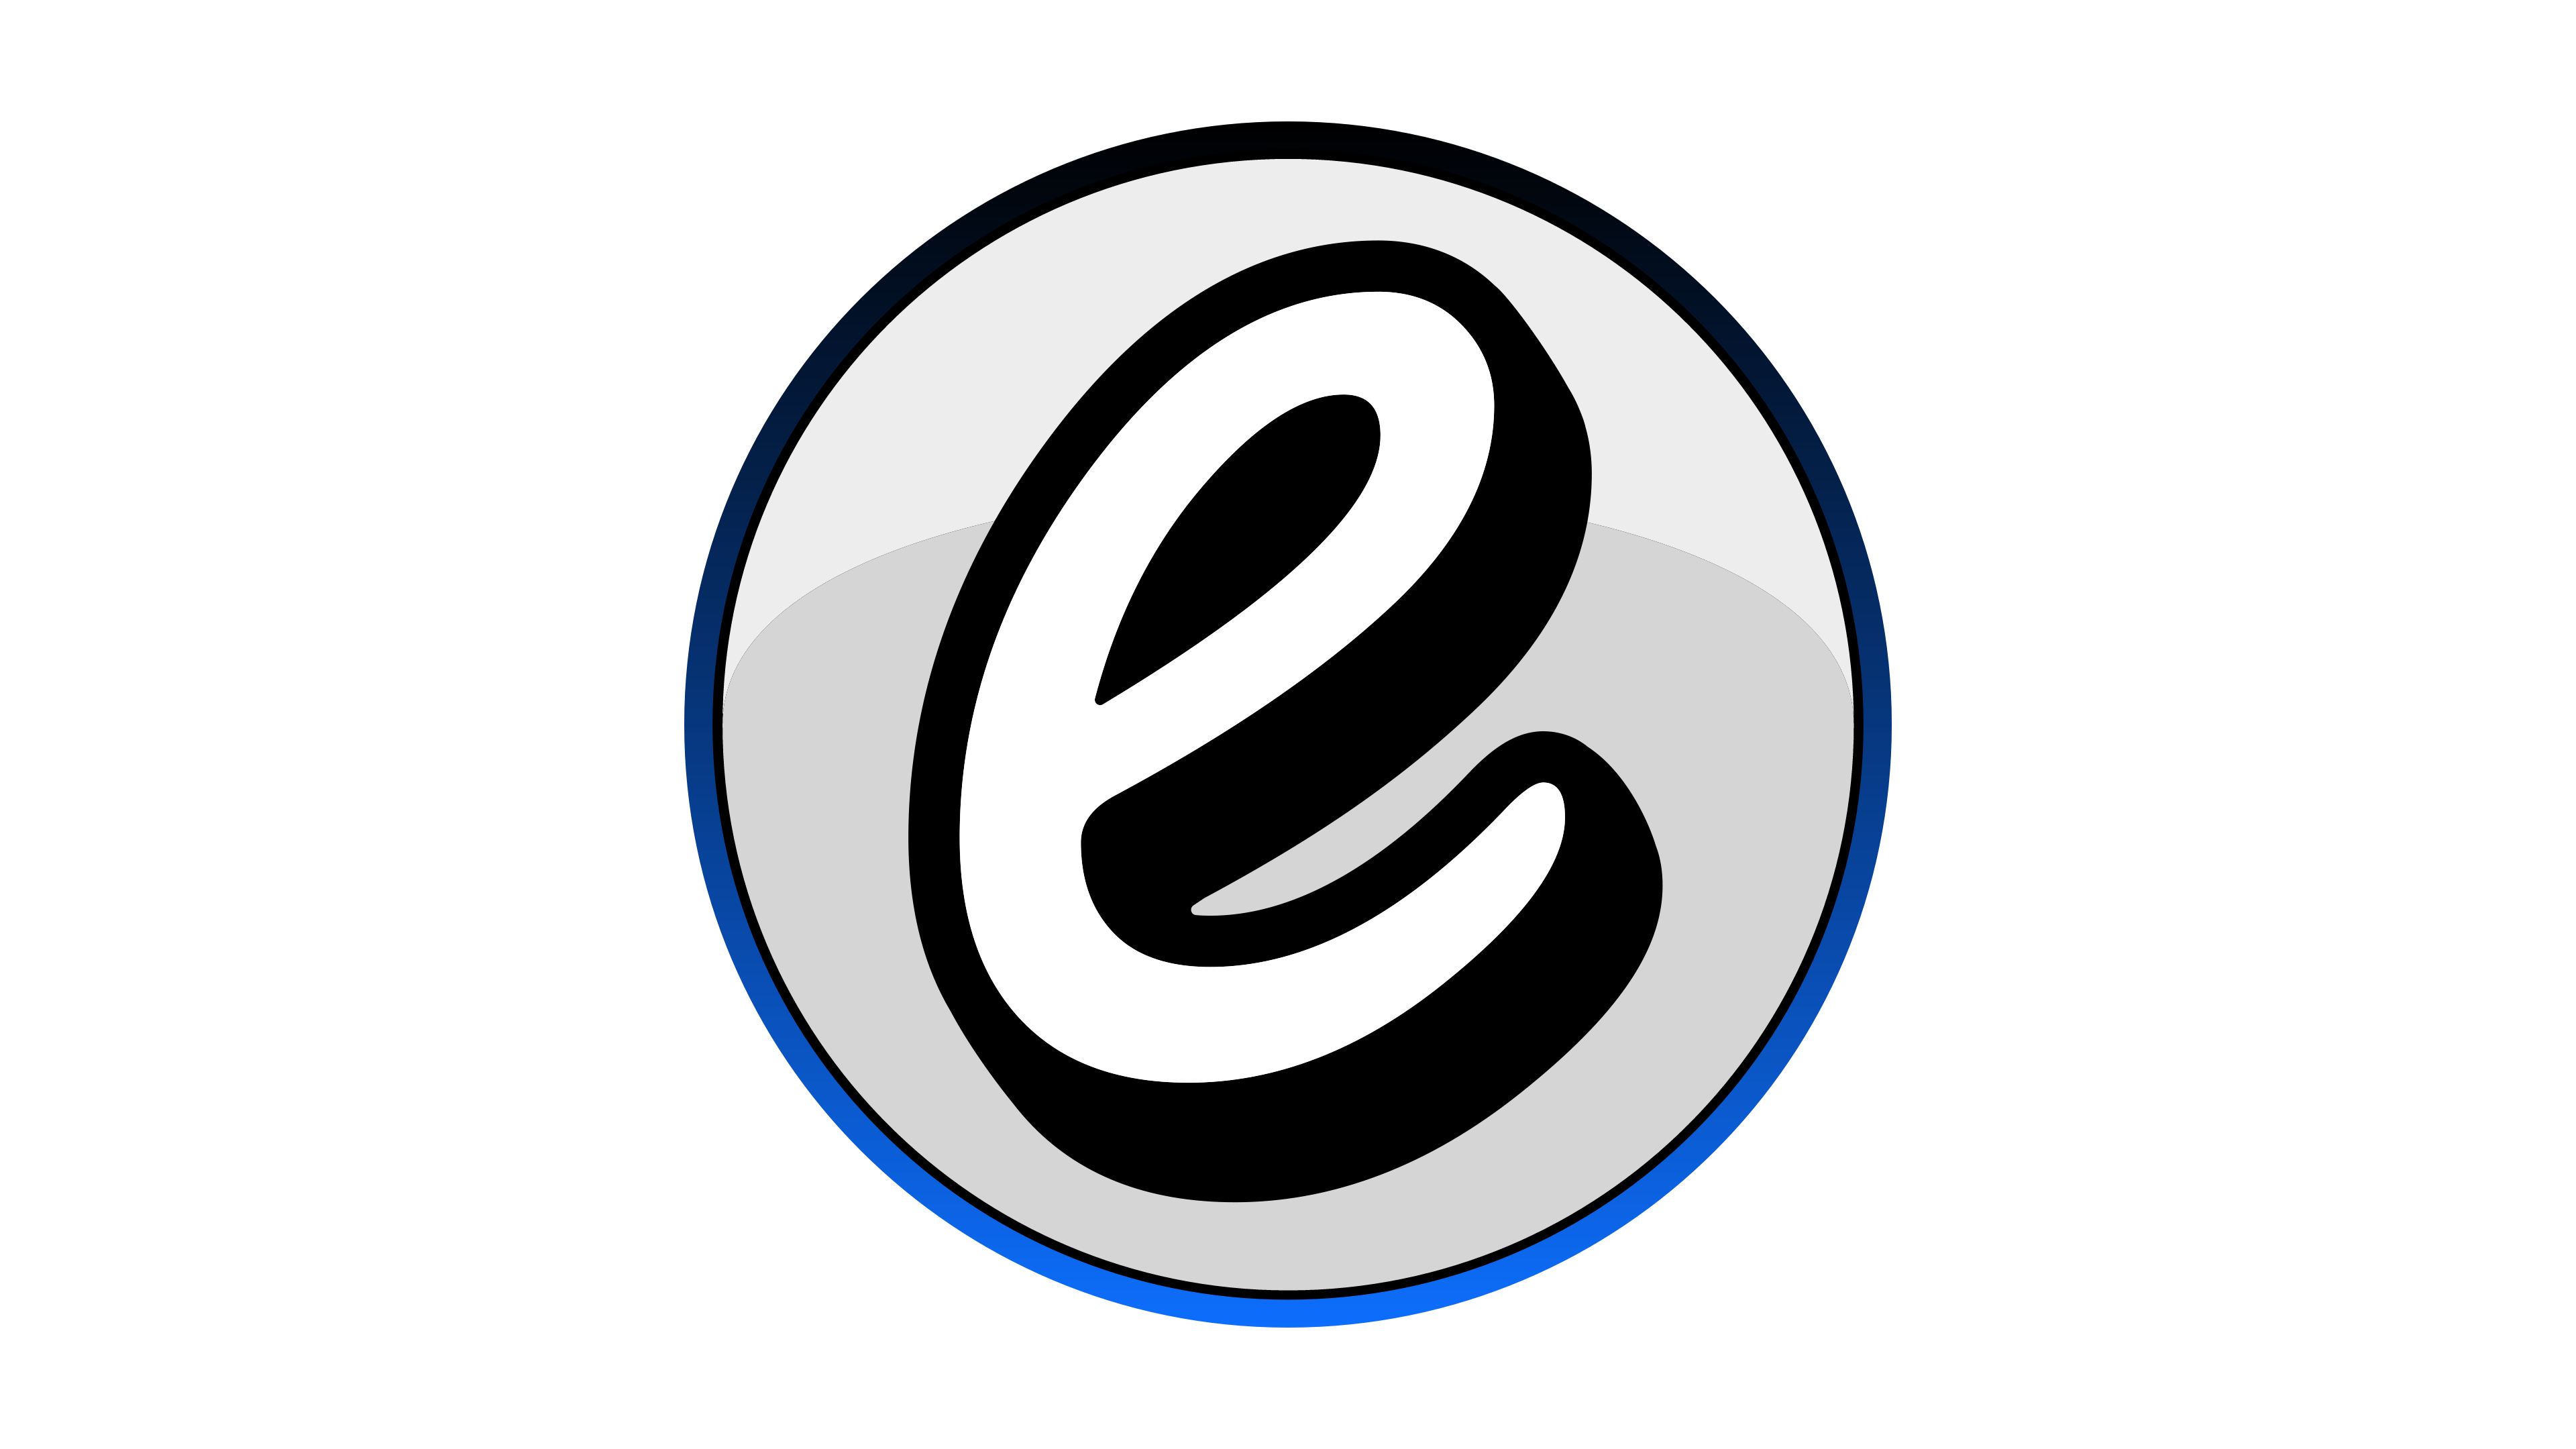 Design Encyclopedia Logo